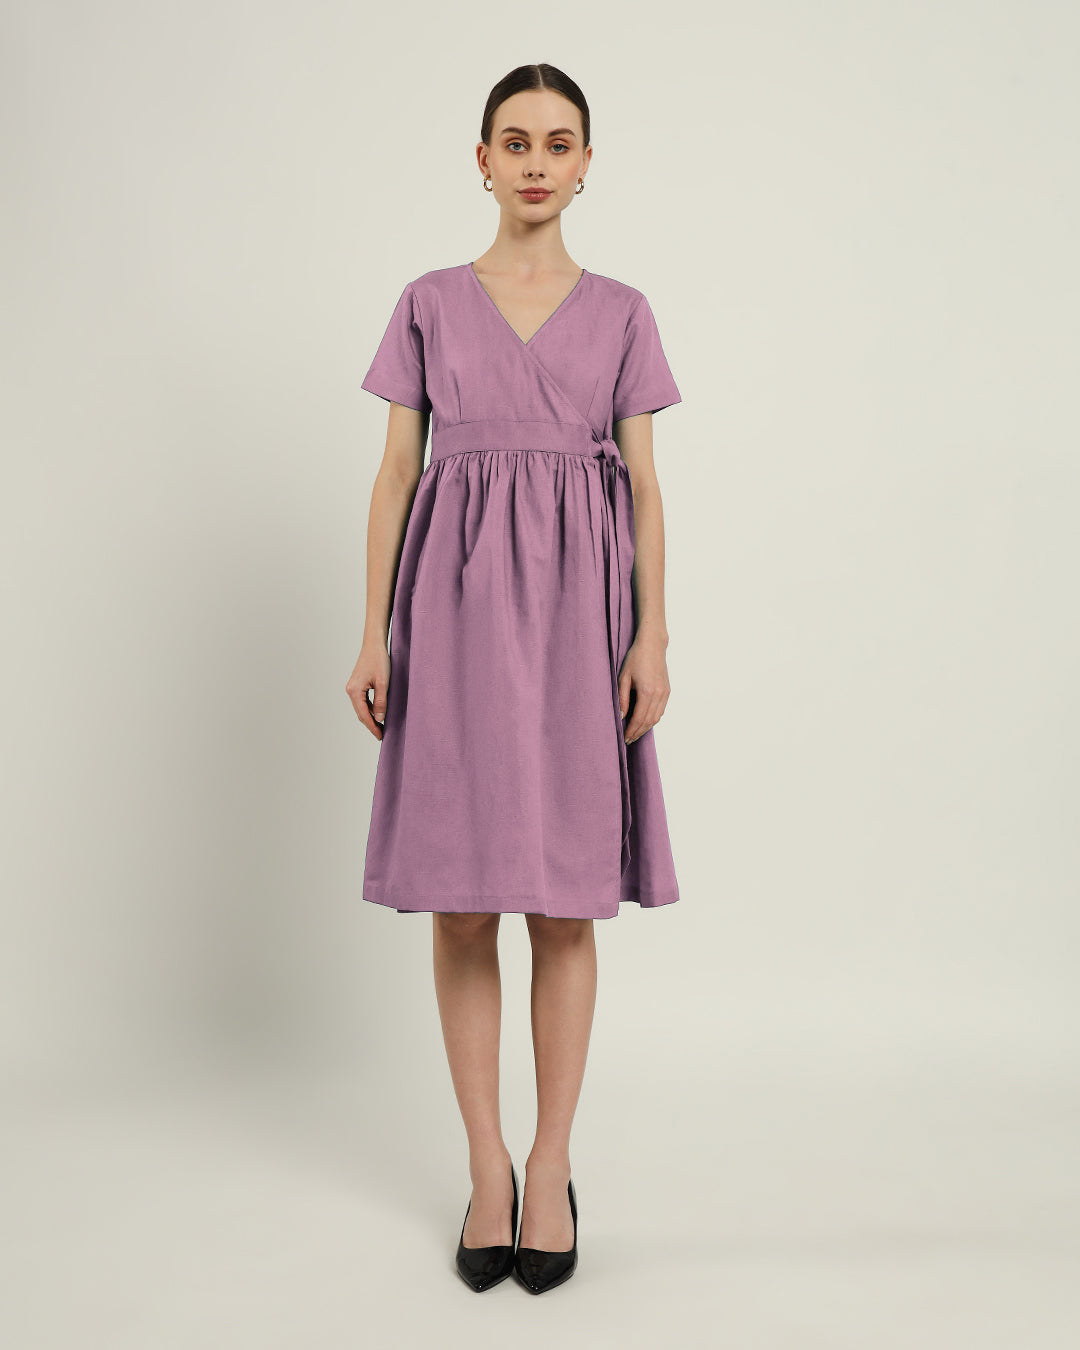 The Miyoshi Purple Swirl Dress